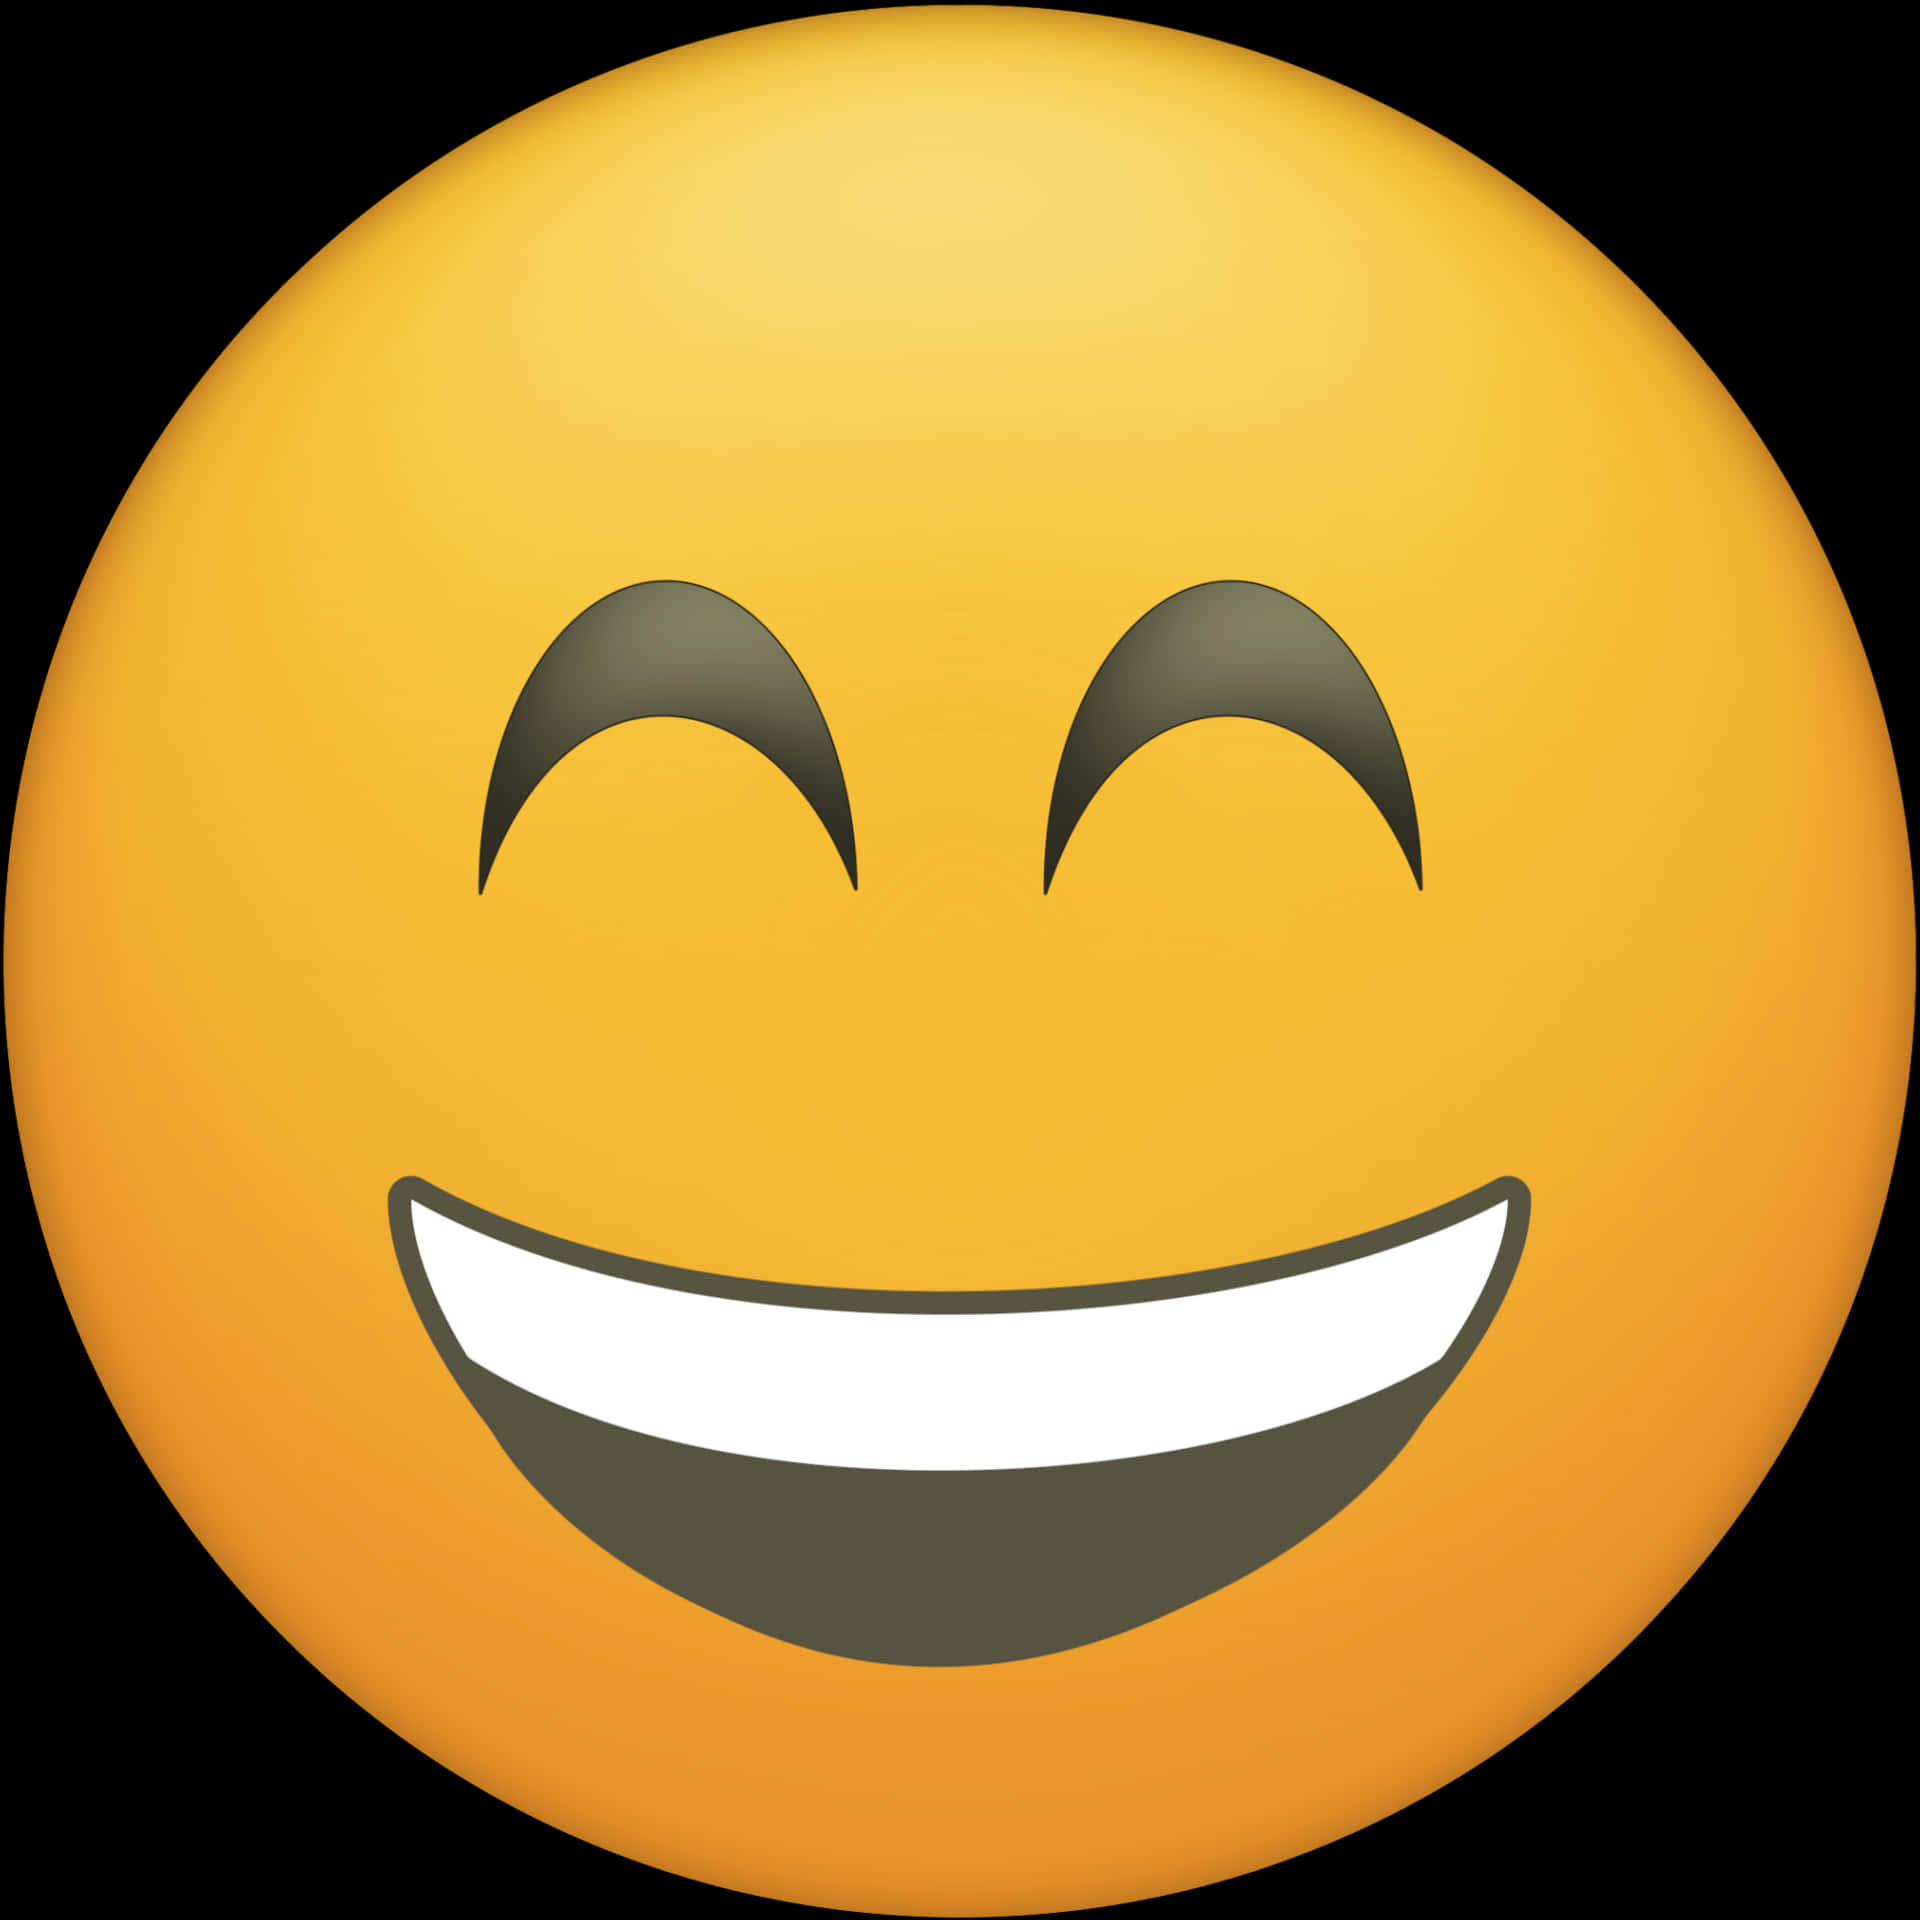 Laughing_ Emoji_ Face.jpg PNG image